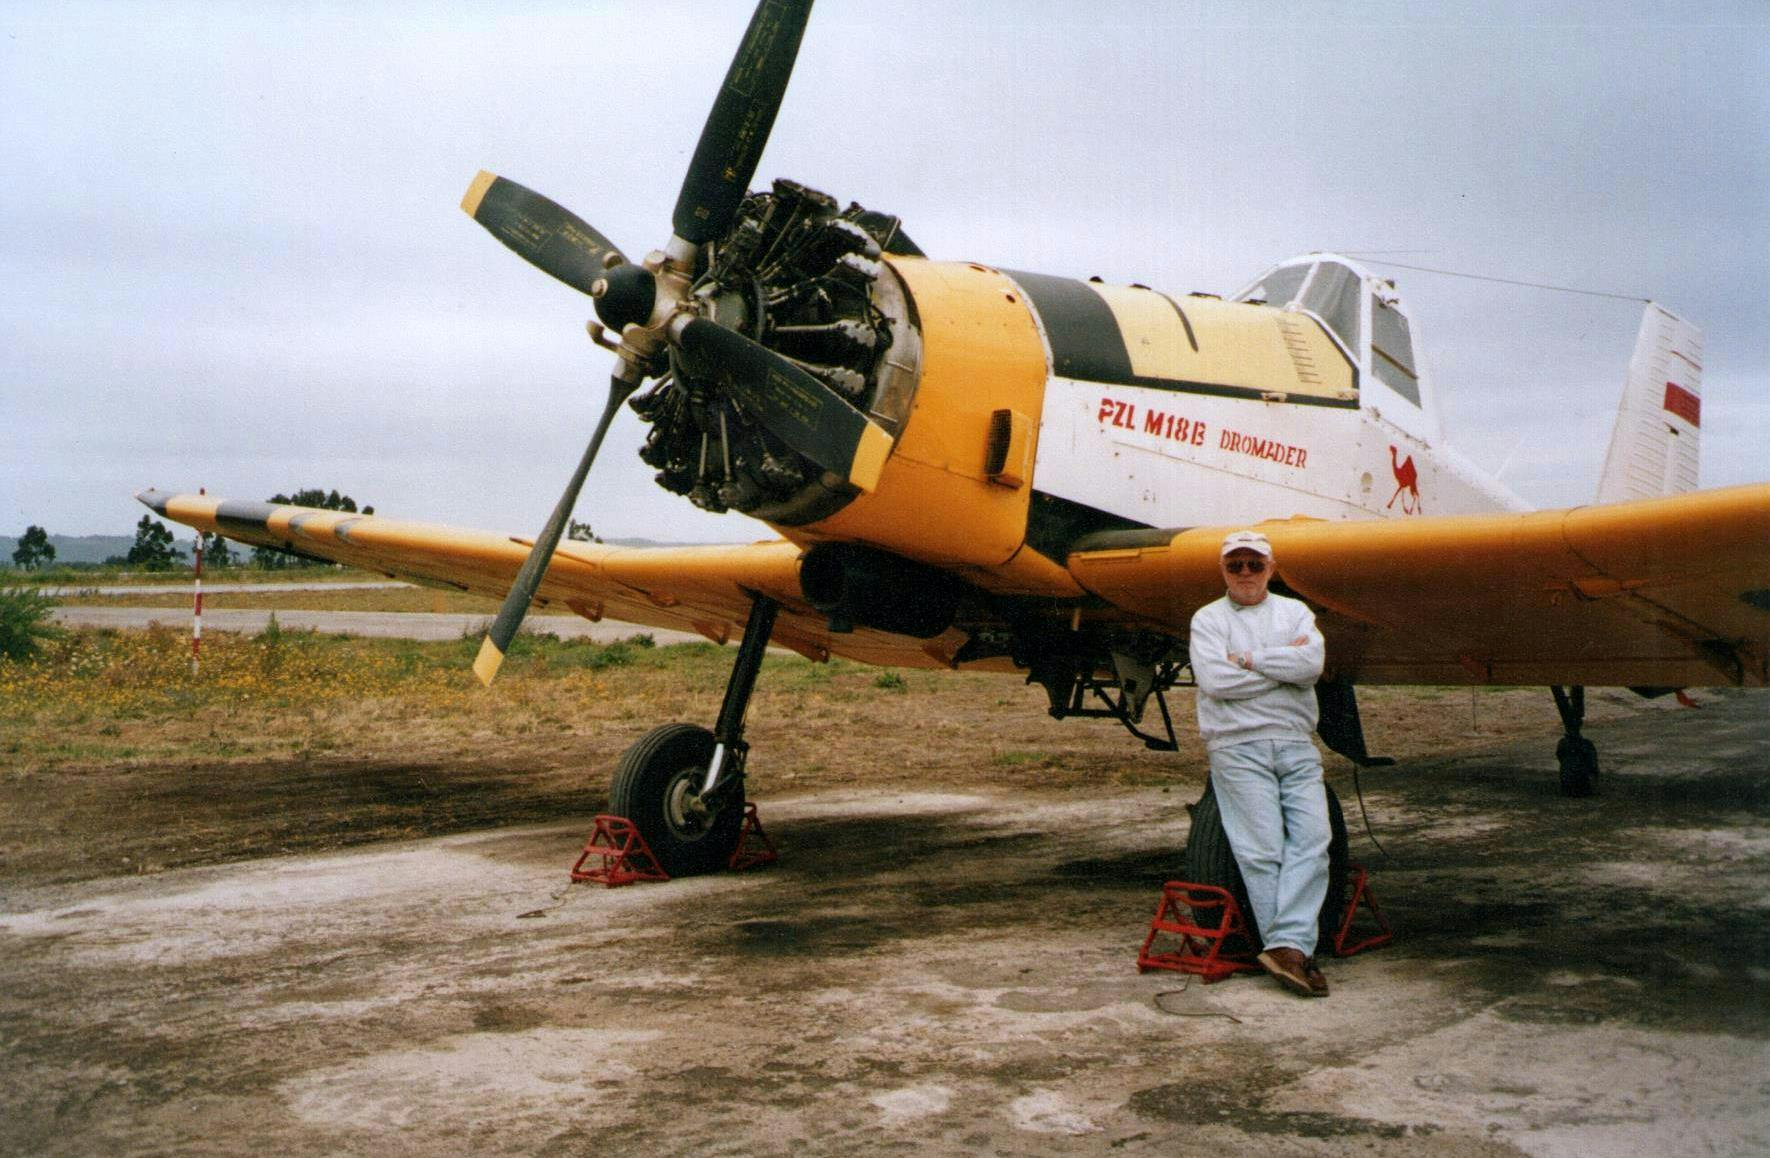 Chile, lotnisko Concepcion, początek XXI wieku. Oparty o samolot PZL M18 Dromader stoi Zbigniew Kowalski.